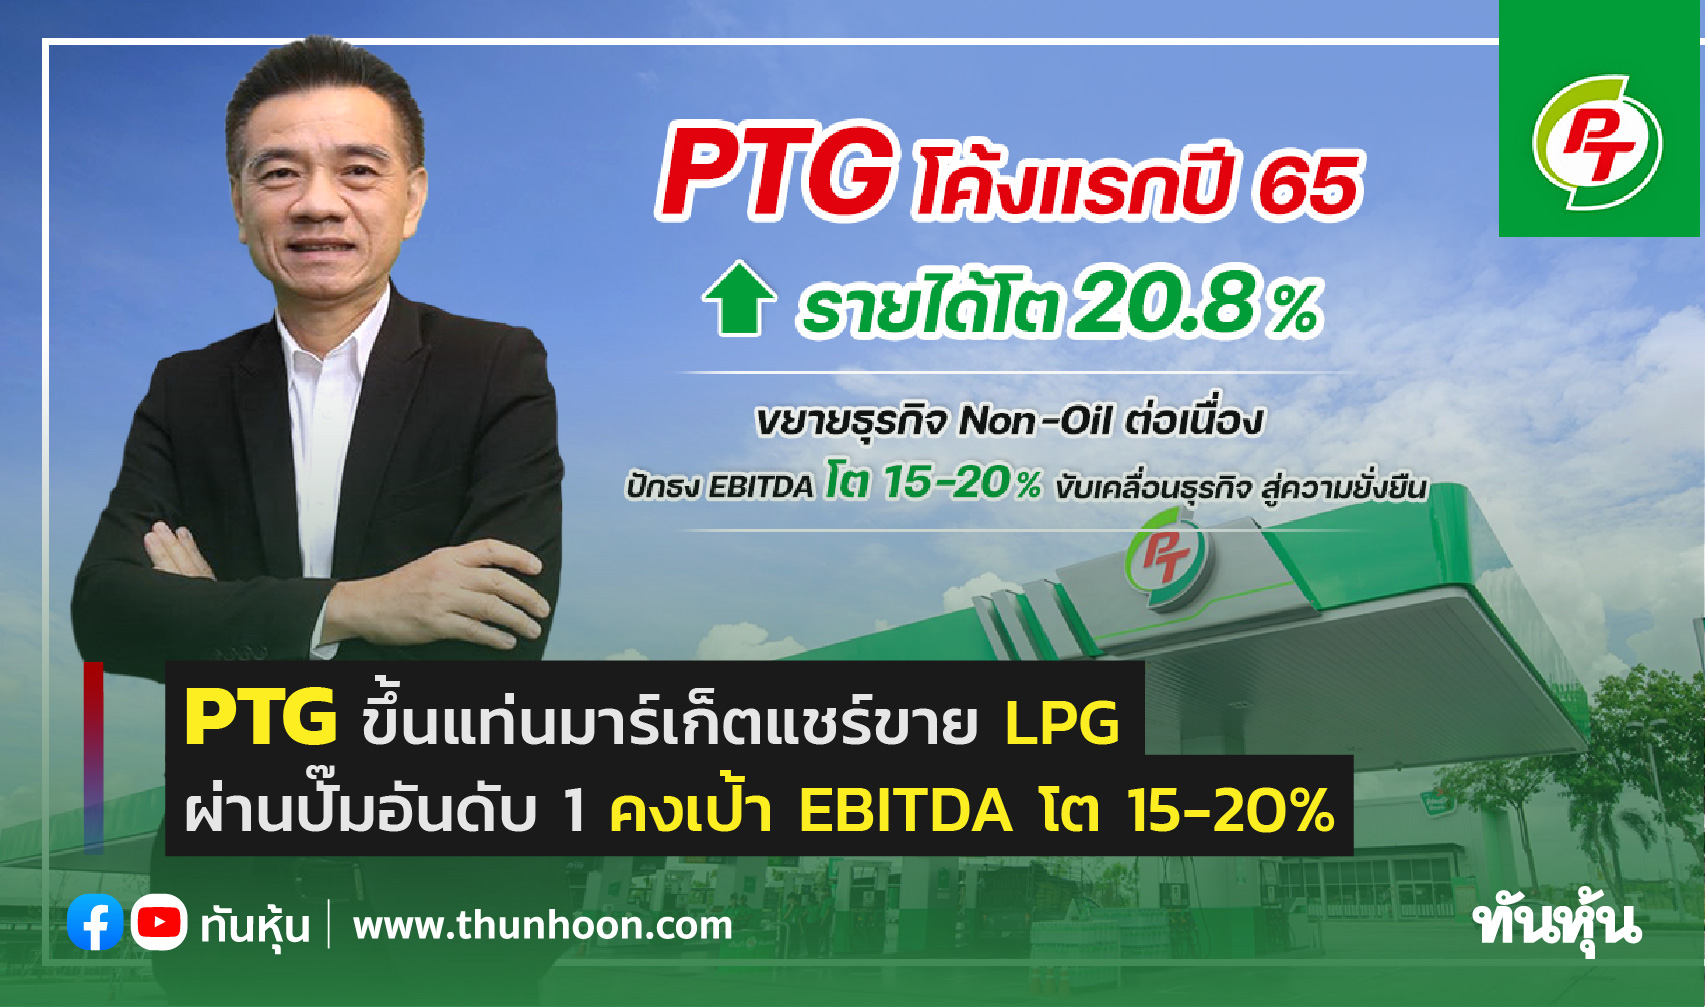 PTG  มาร์เก็ตแชร์ขาย LPG ผ่านปั๊มอันดับ 1 คงเป้า EBITDA โต 15-20%